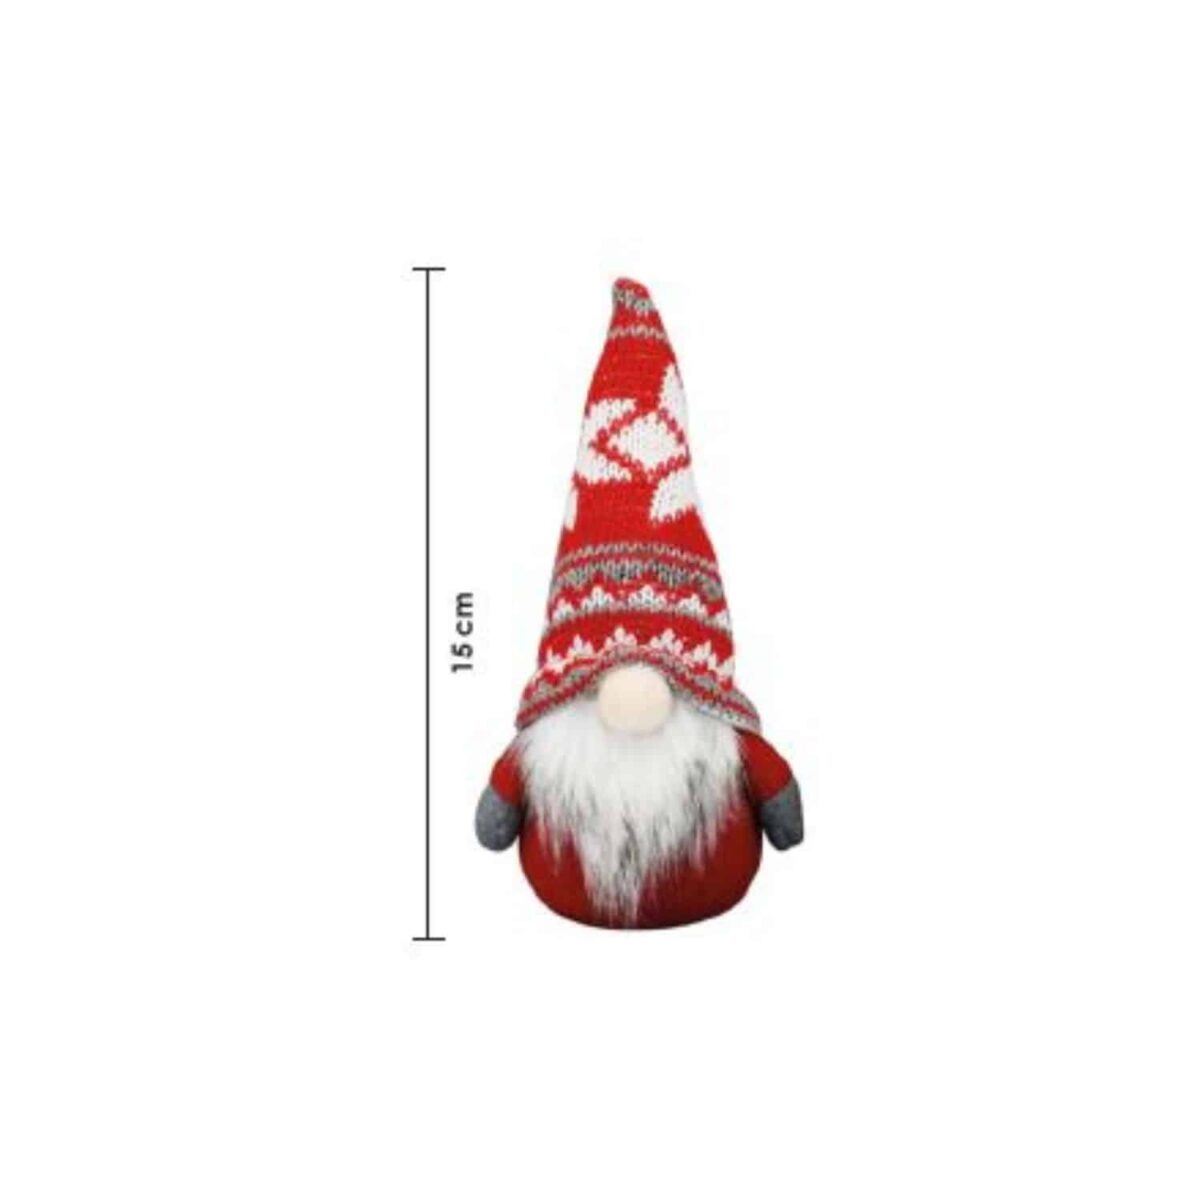 gnomo-mini-alps-15-cm-elfi-gnomi-pupazzi-natale-decorazioni-natalizie-feltro-dettagli-misure-tirolesi